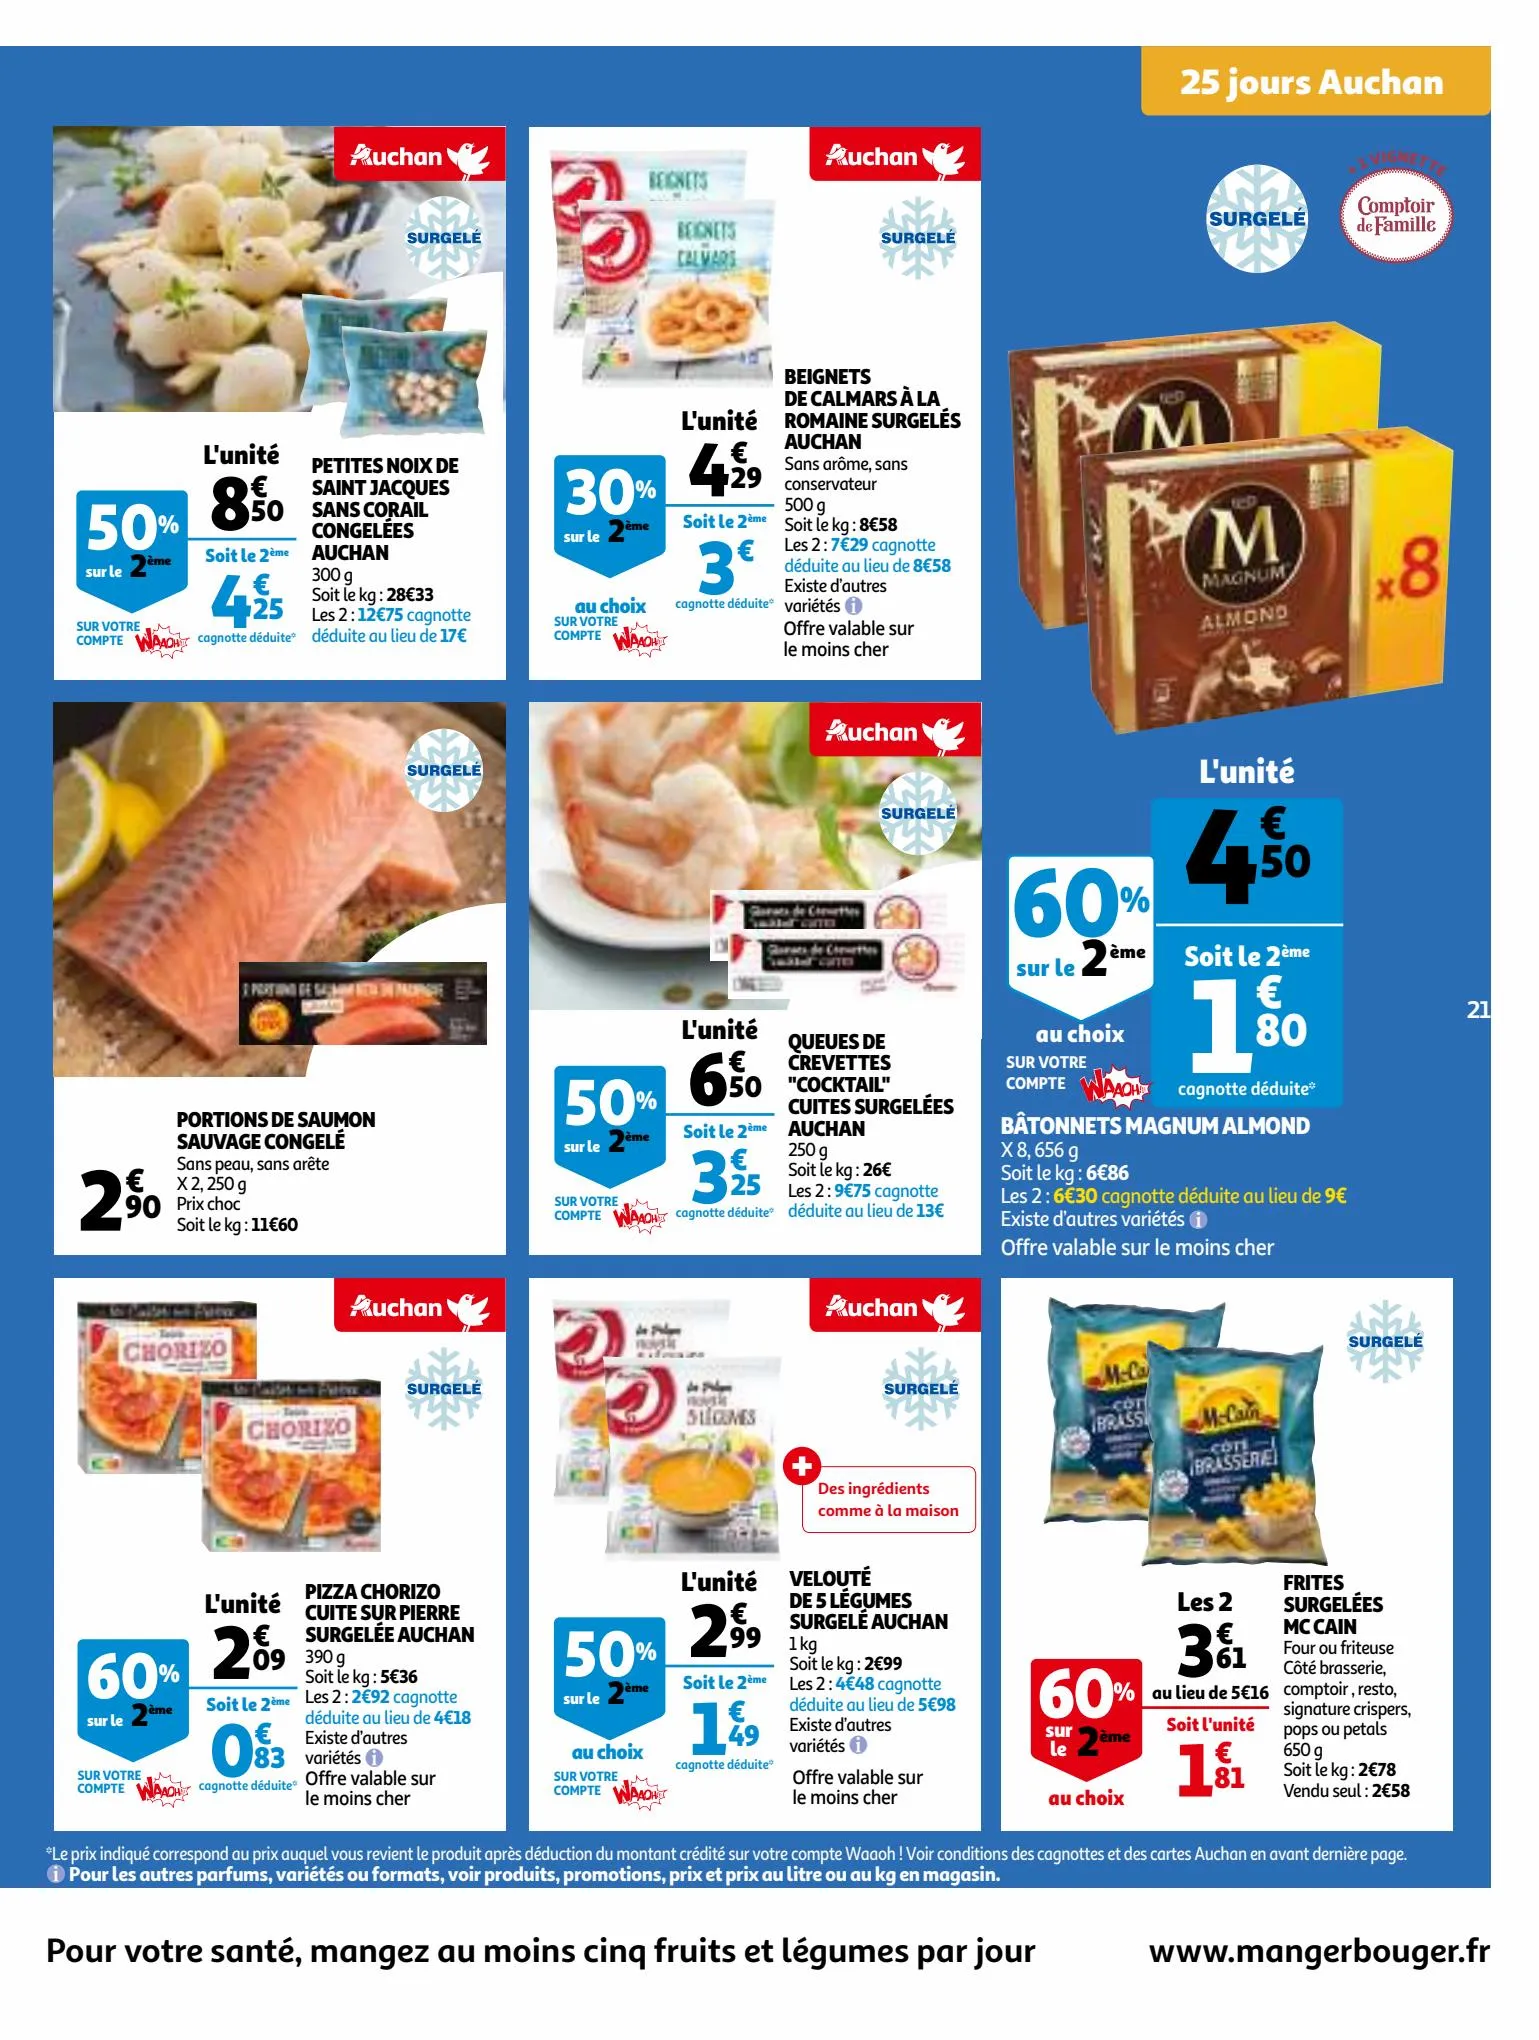 Catalogue 25 Jours Auchan, page 00021